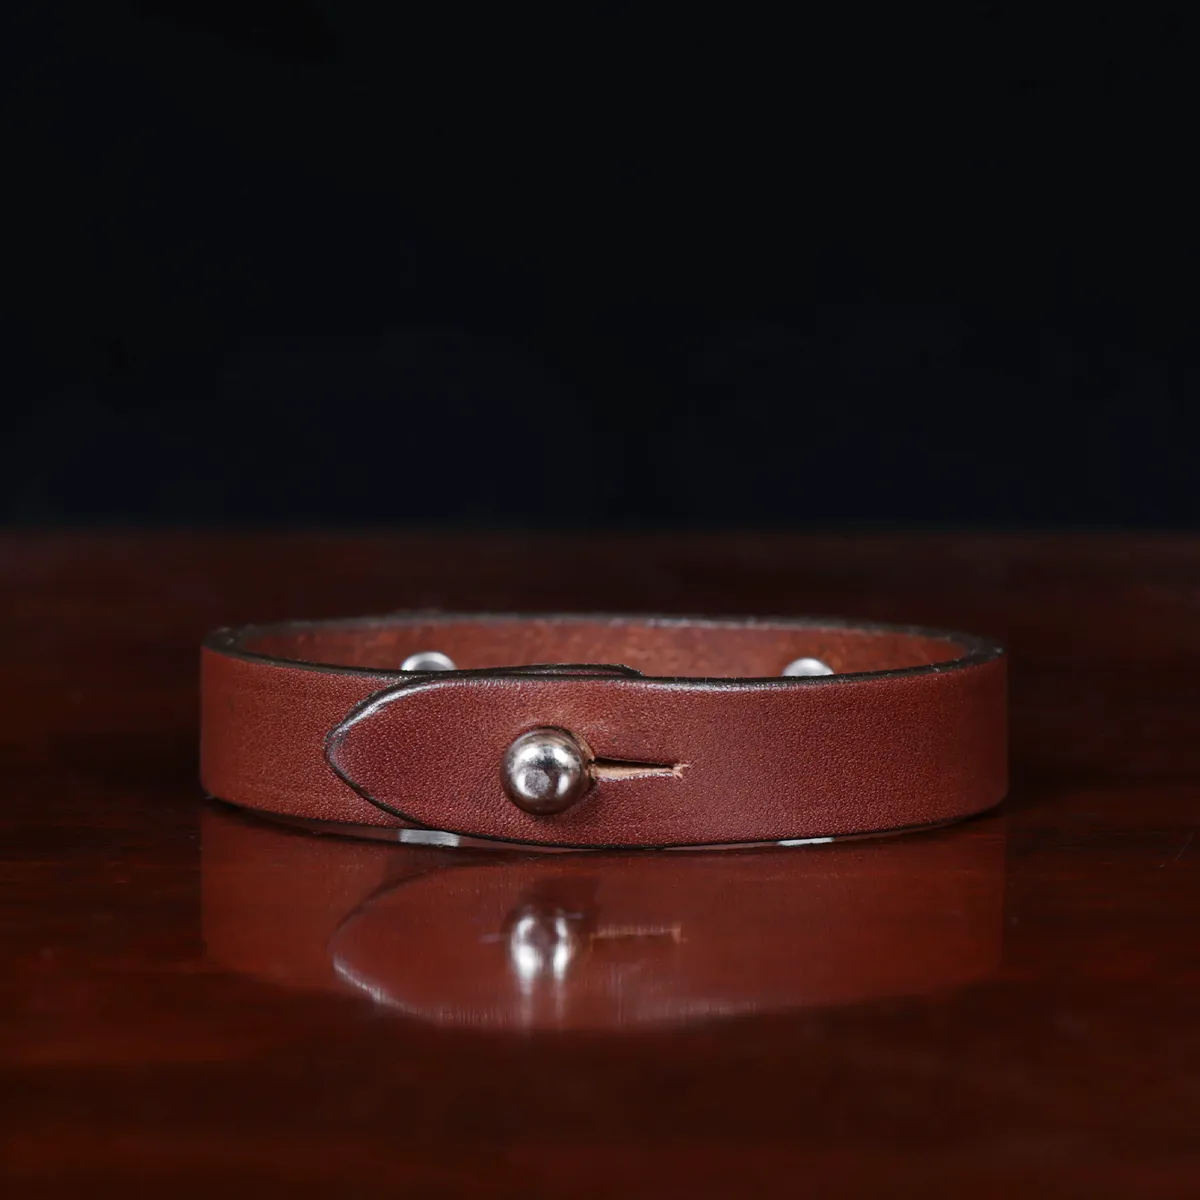 Vintage Double Wrap Leather Monogram Bracelet